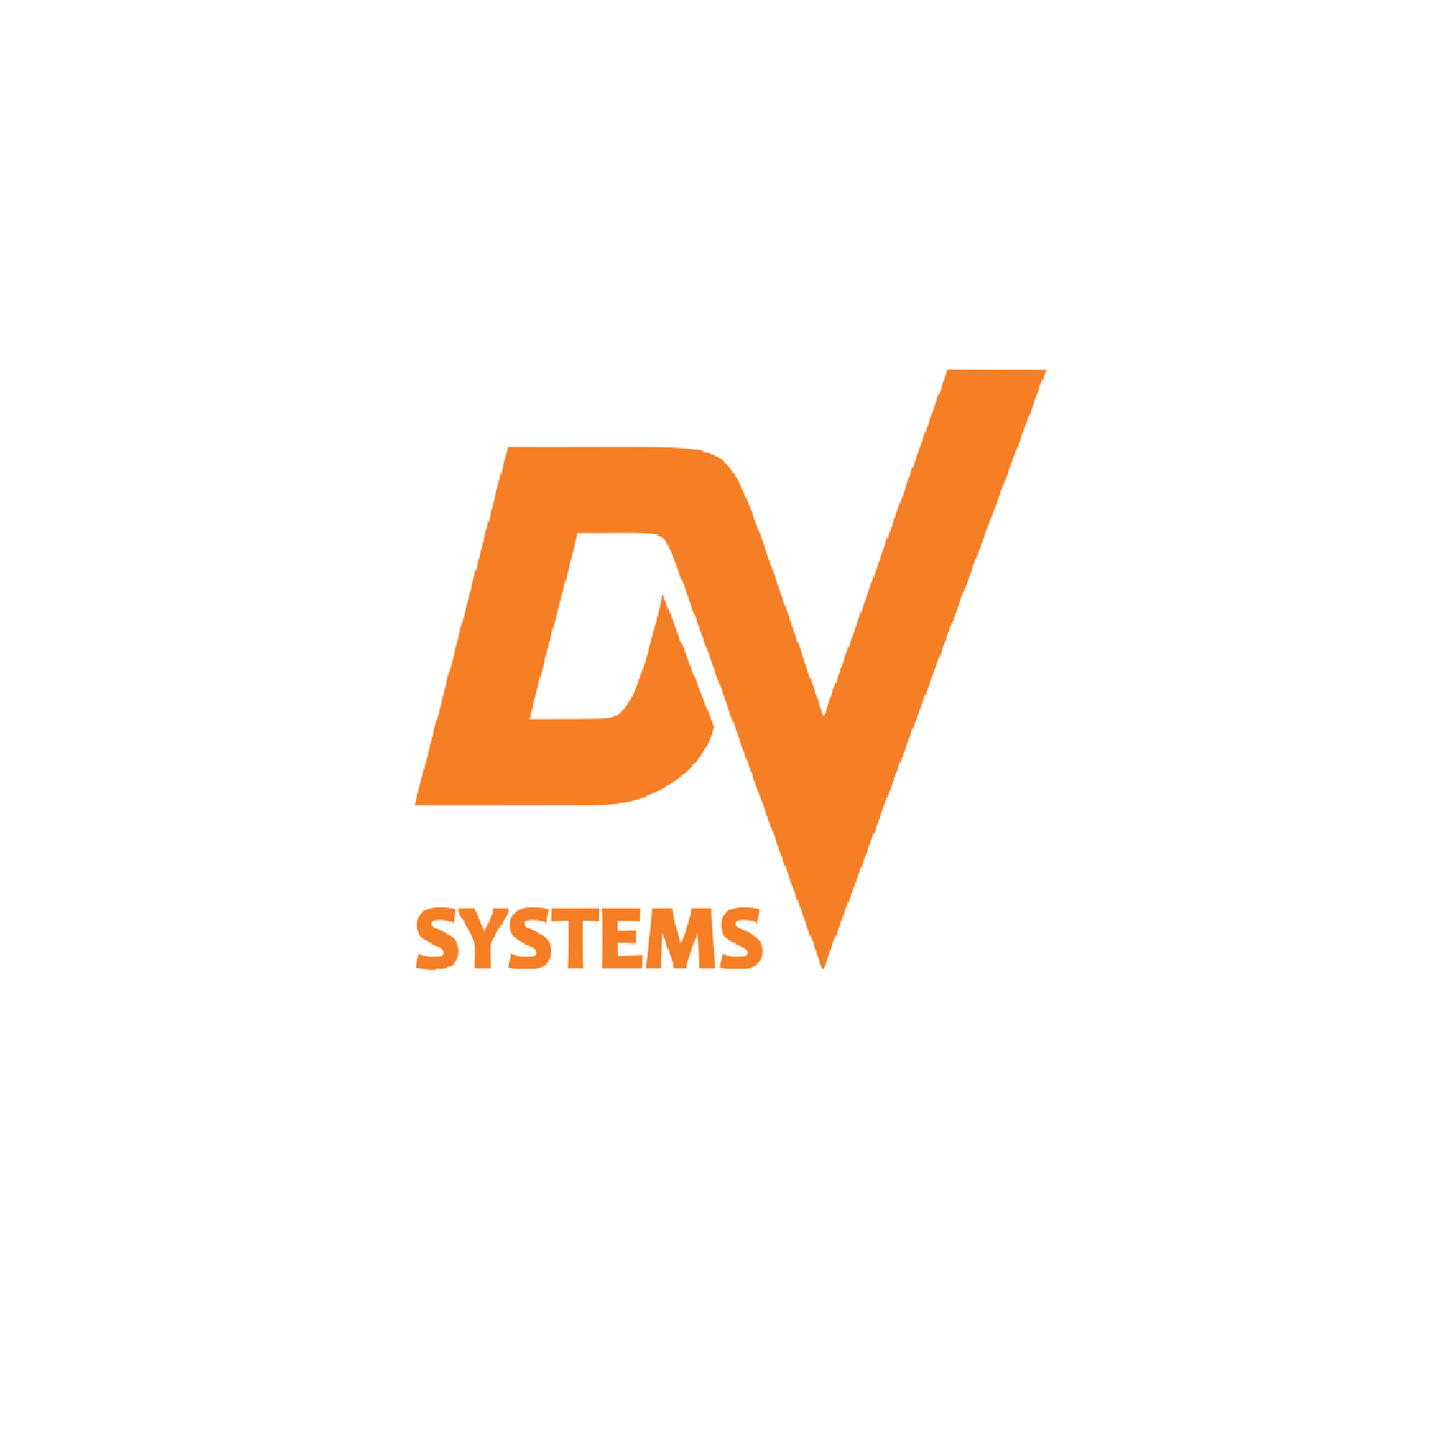 Dsc-002708 inverter 15hp 575v dv systems